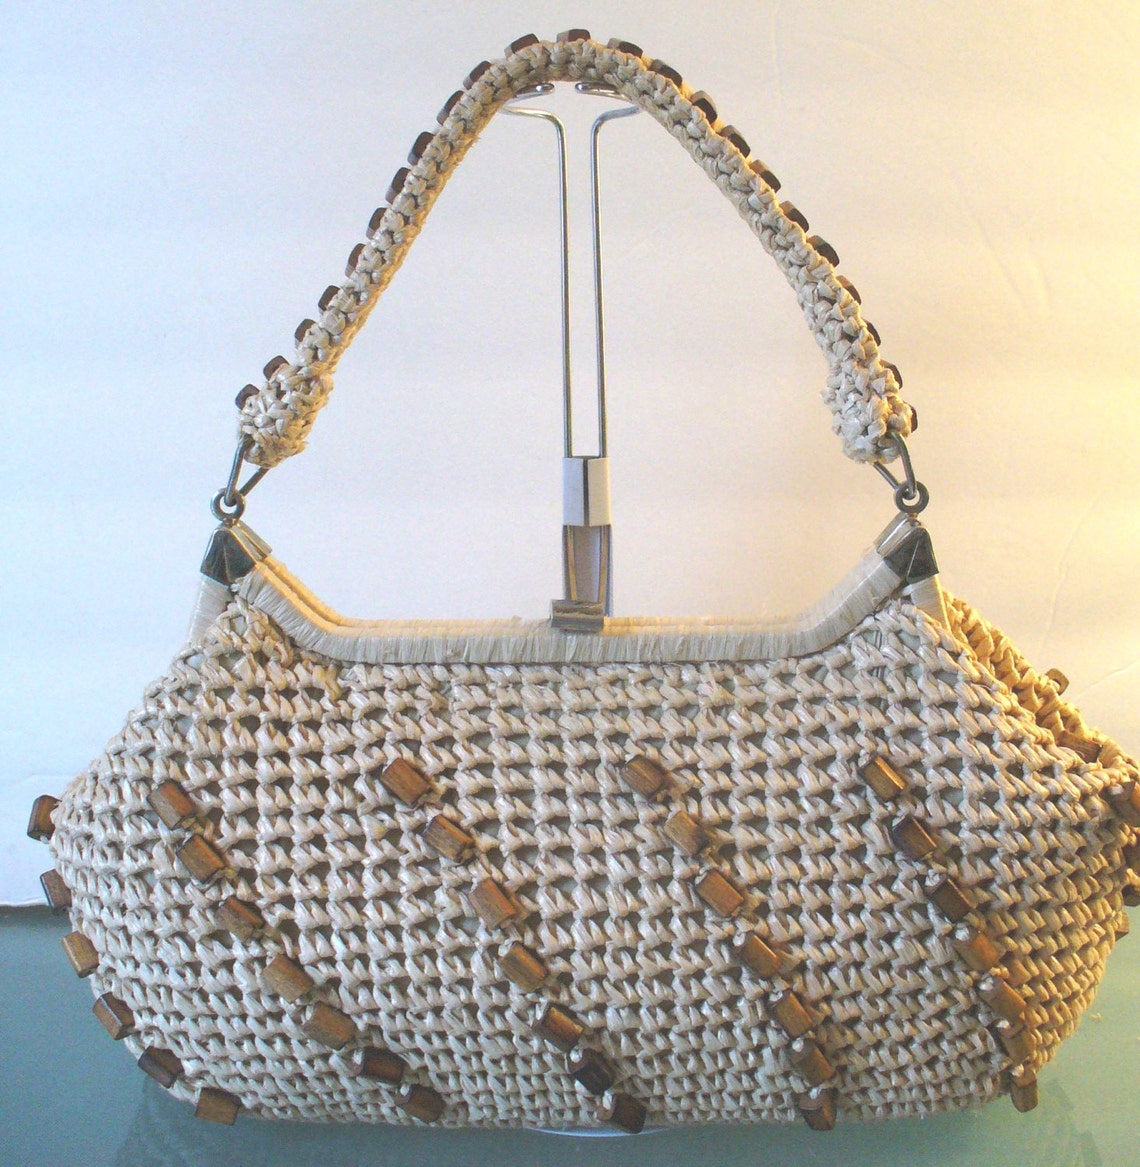 Vintage Raffia Handbag With Wood Bead Detail | Etsy